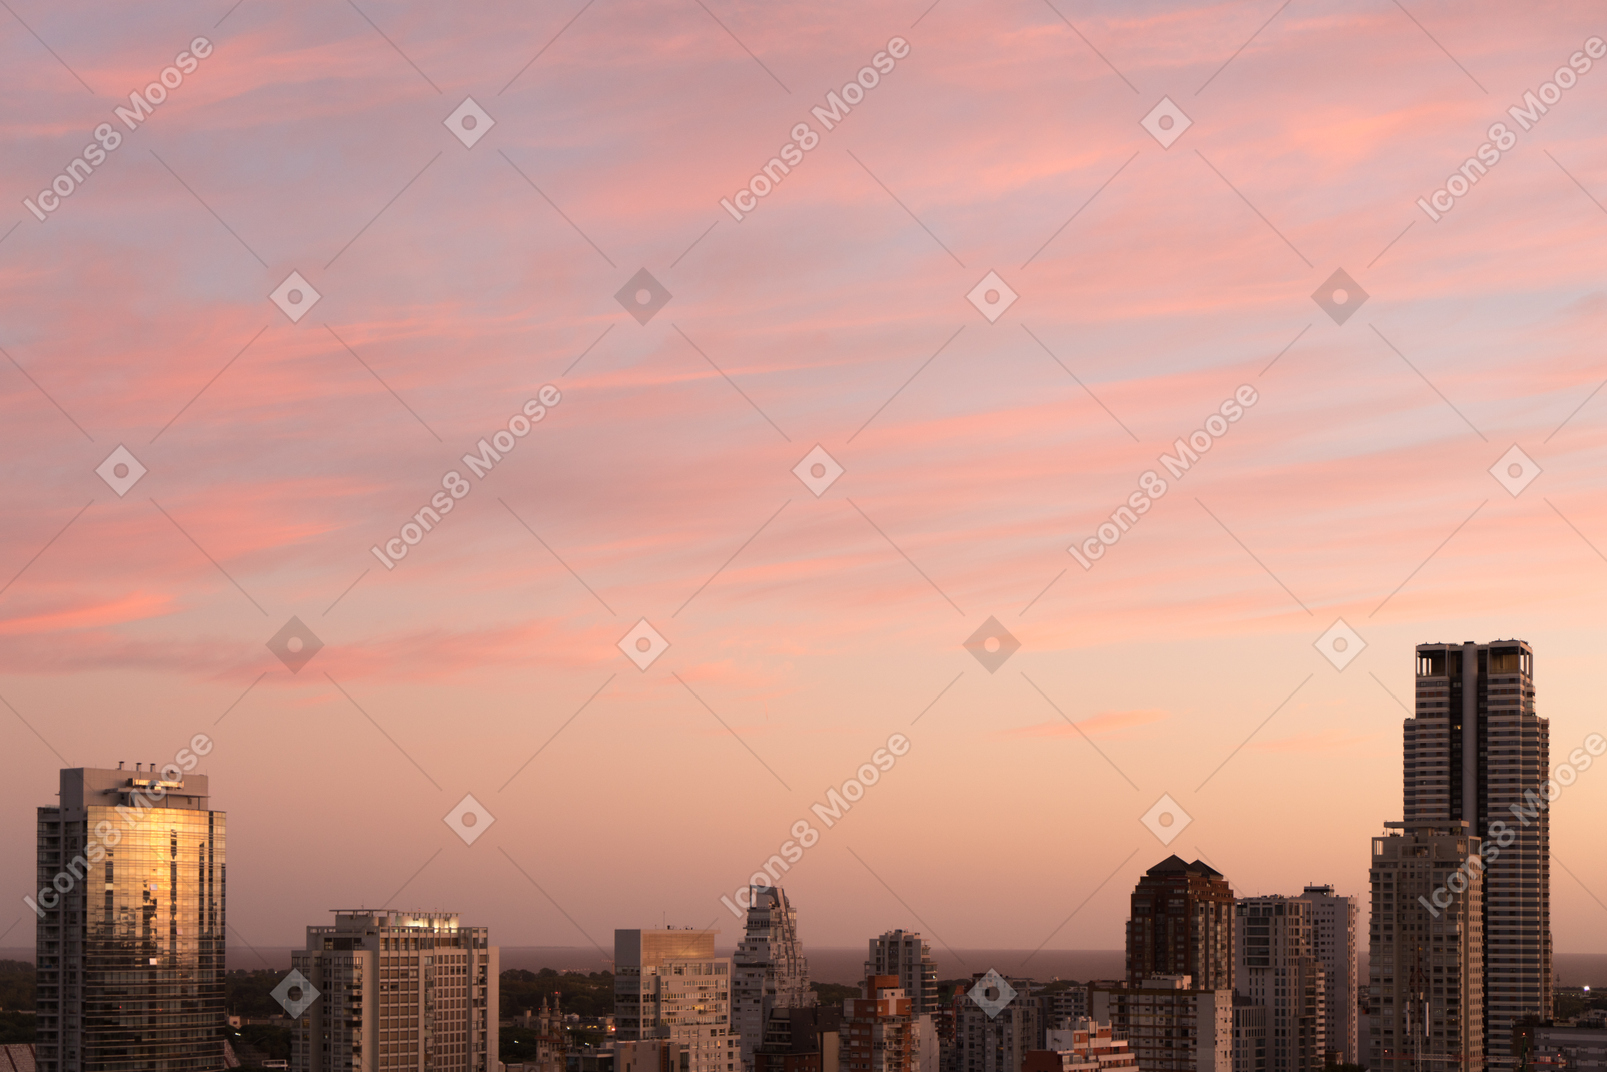 La vista della città all'alba rosa